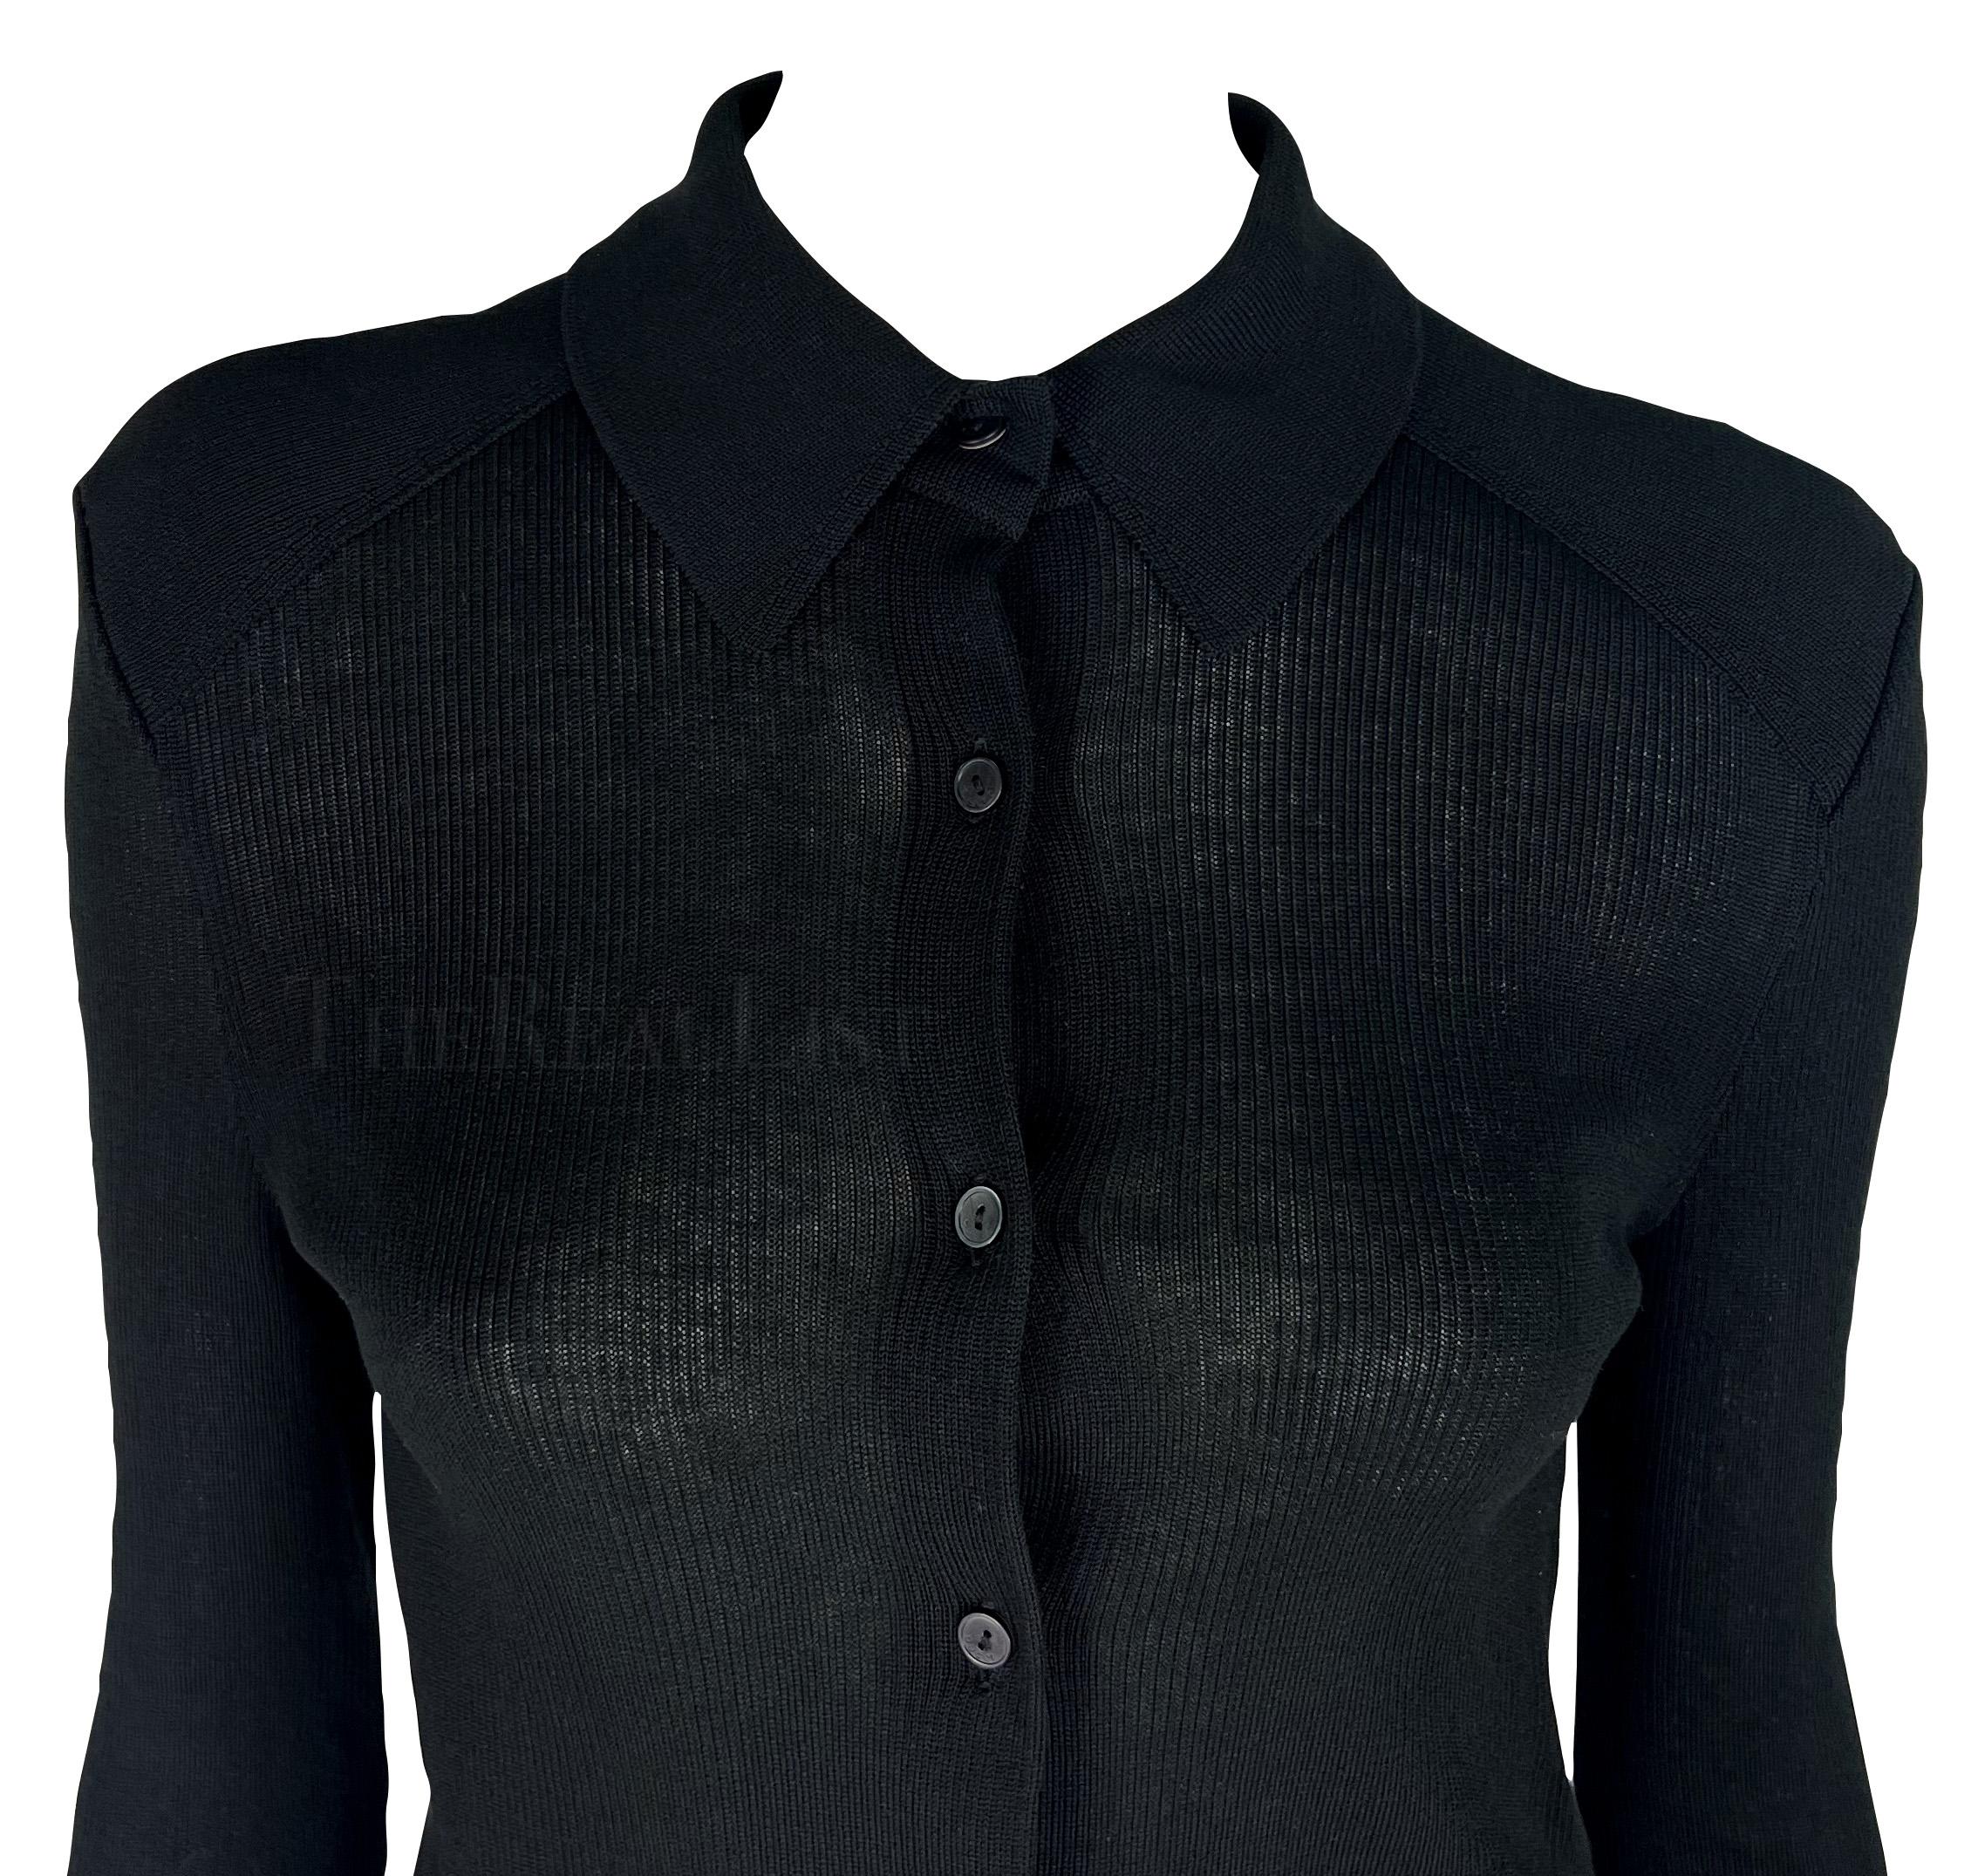 Wir präsentieren einen fabelhaften schwarzen Gucci-Pullover, entworfen von Tom Ford. Dieser schicke, halbdurchsichtige schwarze Strickpullover aus dem Jahr 1998 hat einen Kragen und wird mit einem Knopfverschluss geschlossen. Dieses Gucci by Tom